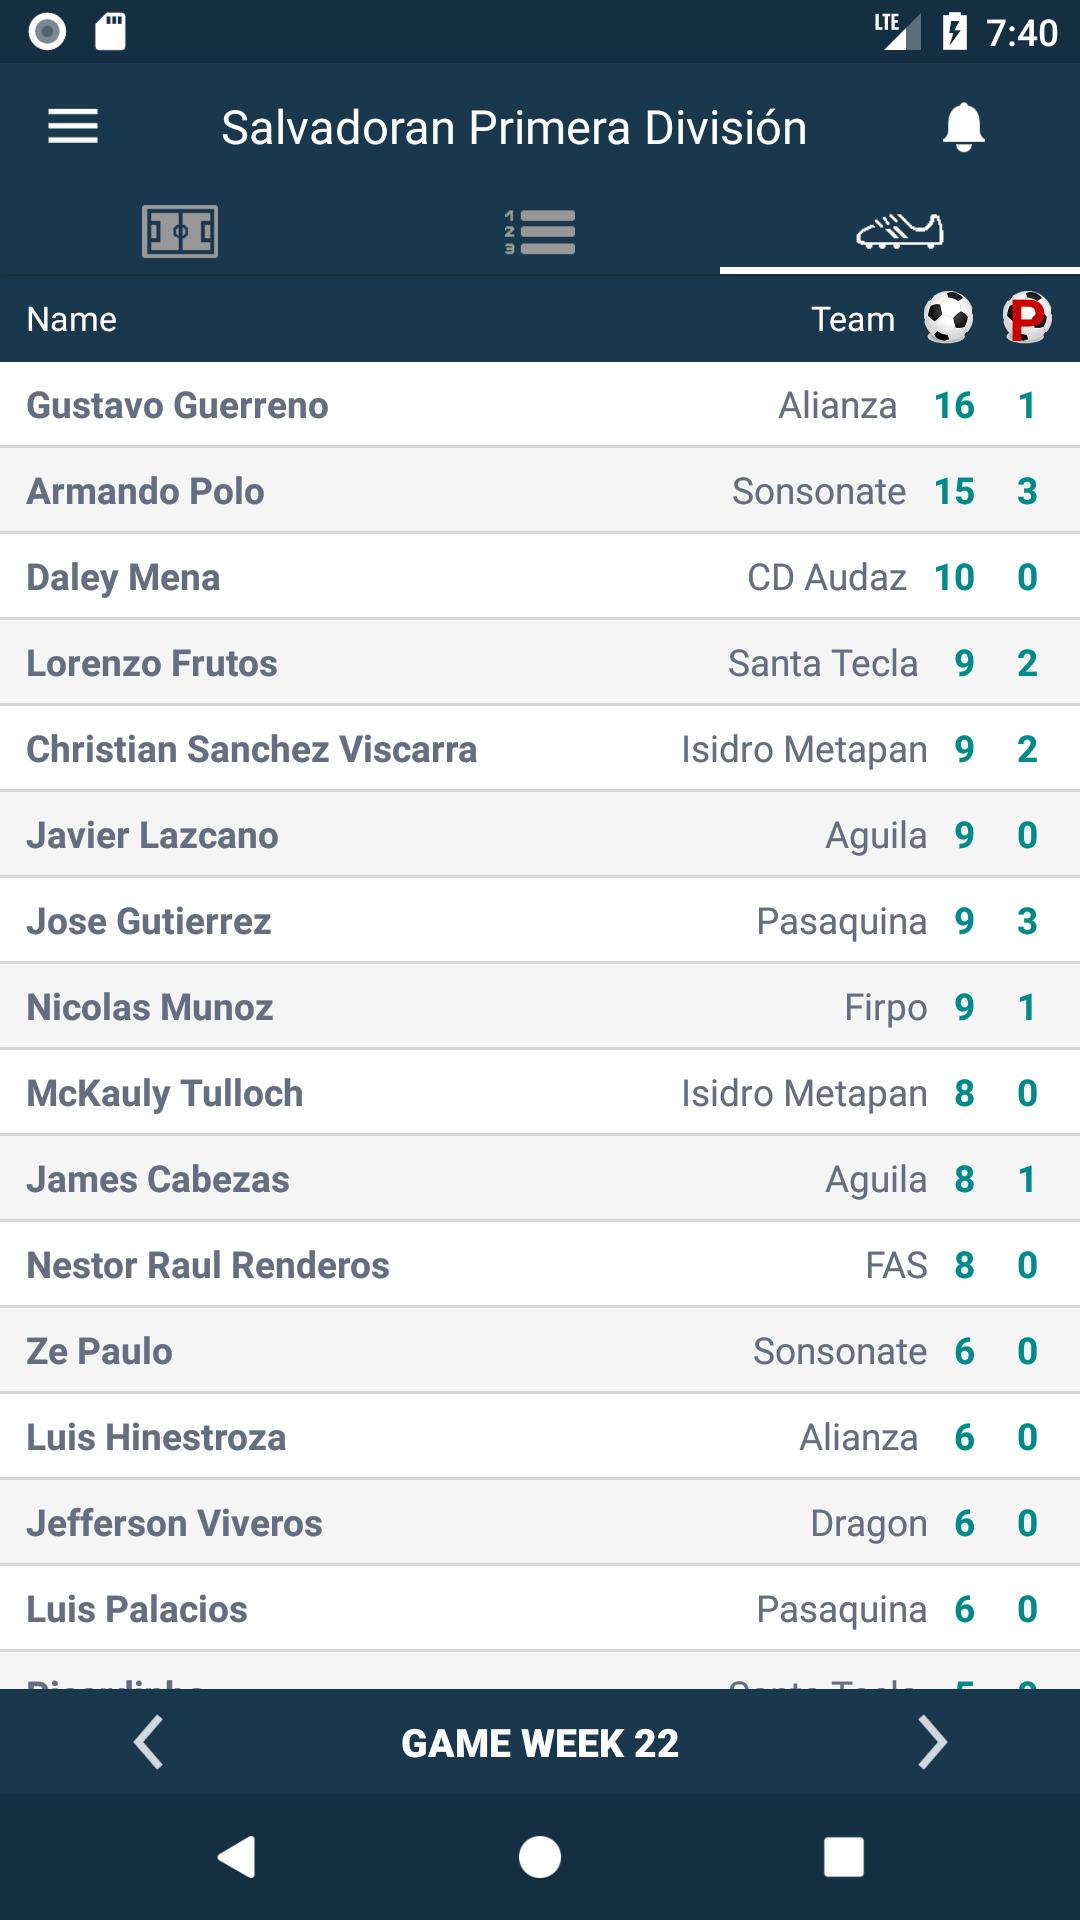 Resultados para Primera División - El Salvador for Android - APK Download